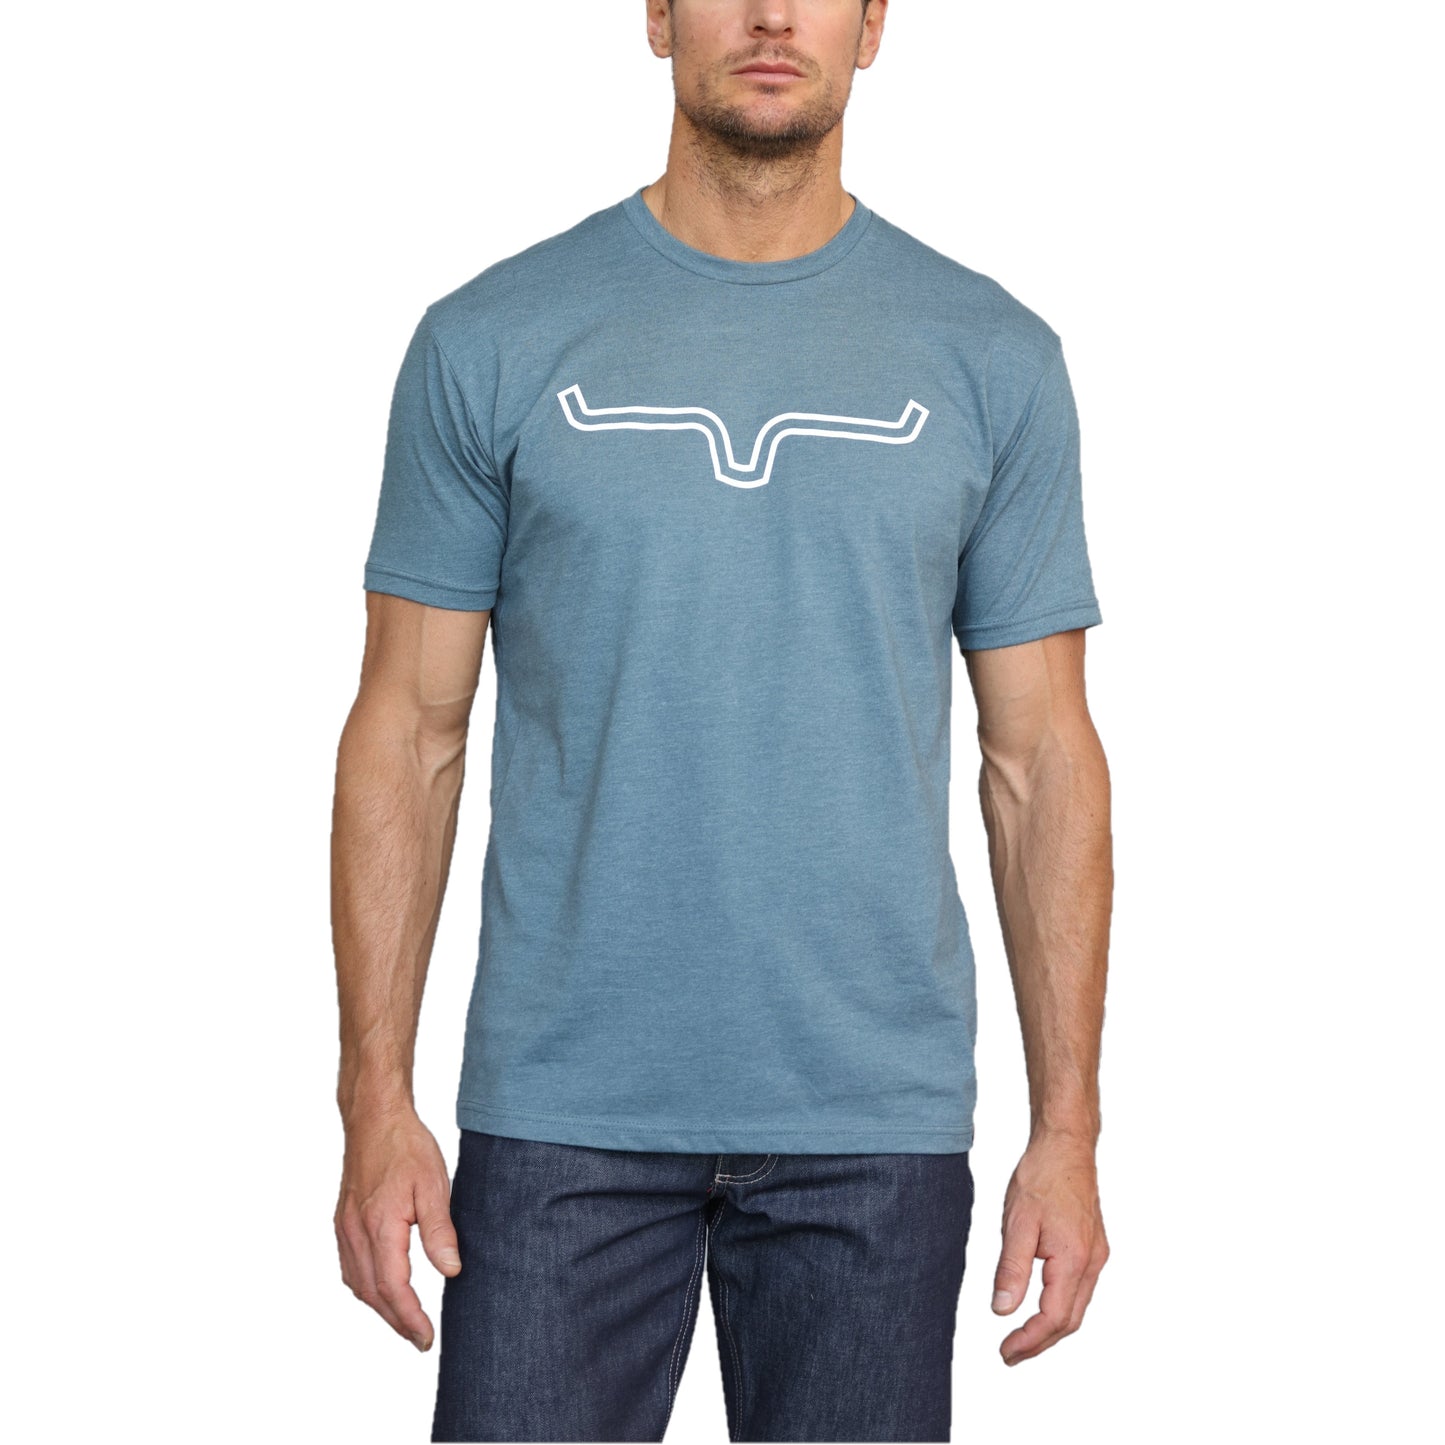 Kimes Ranch Men's Outlier SS Indigo w/ White Logo T-Shirt OUTLIN-IND